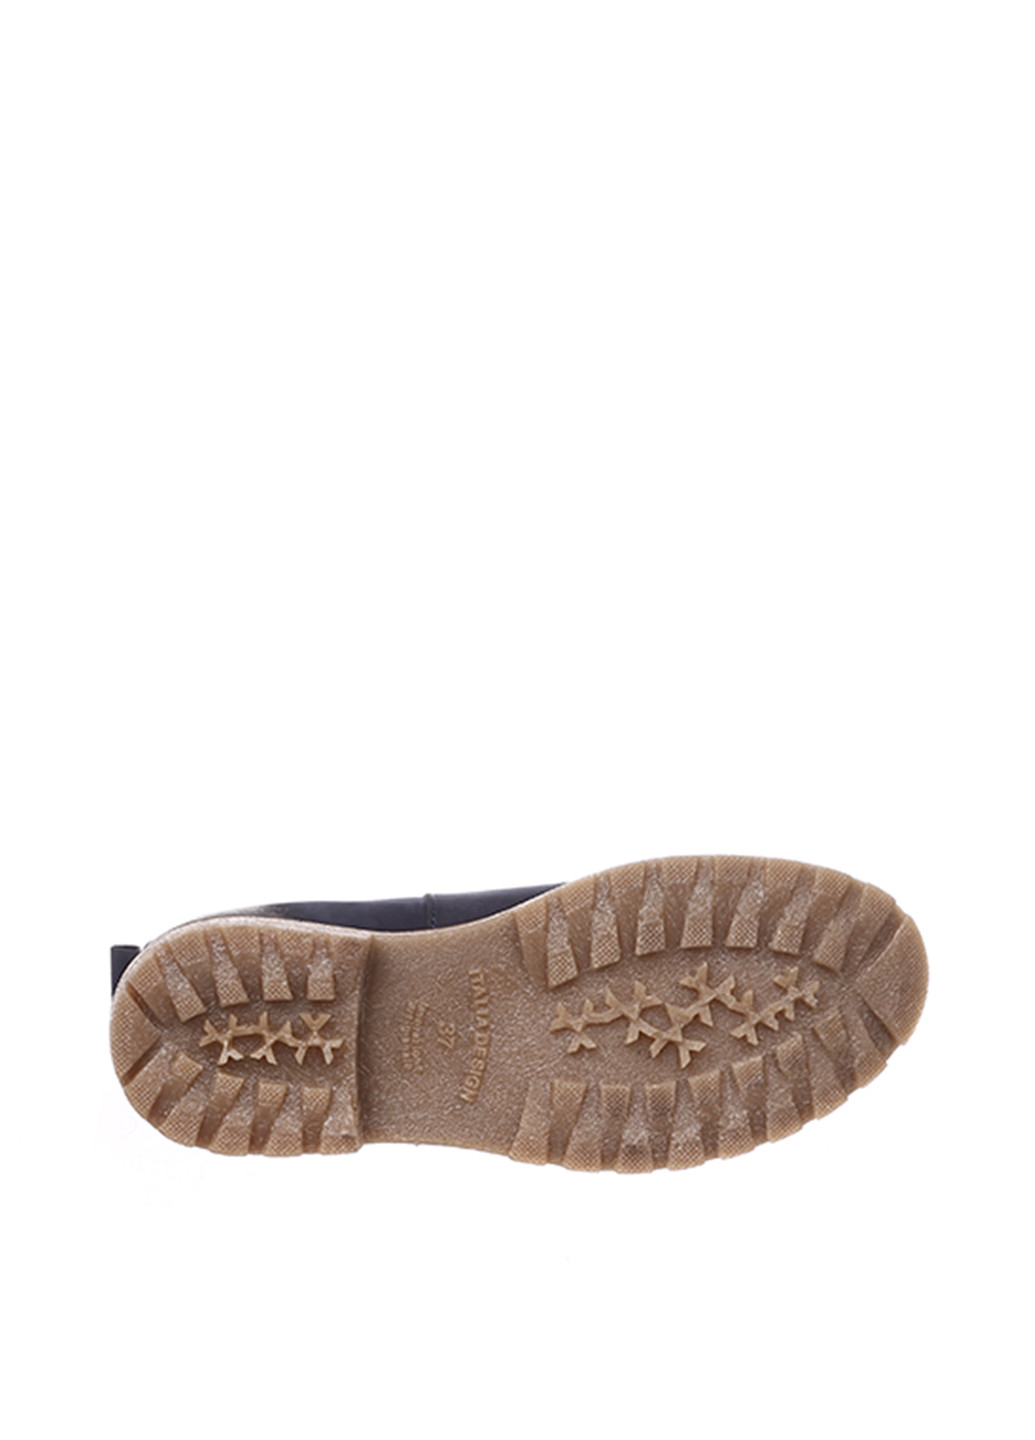 Осенние ботинки челси Maria Tucci с потертостями из натурального нубука